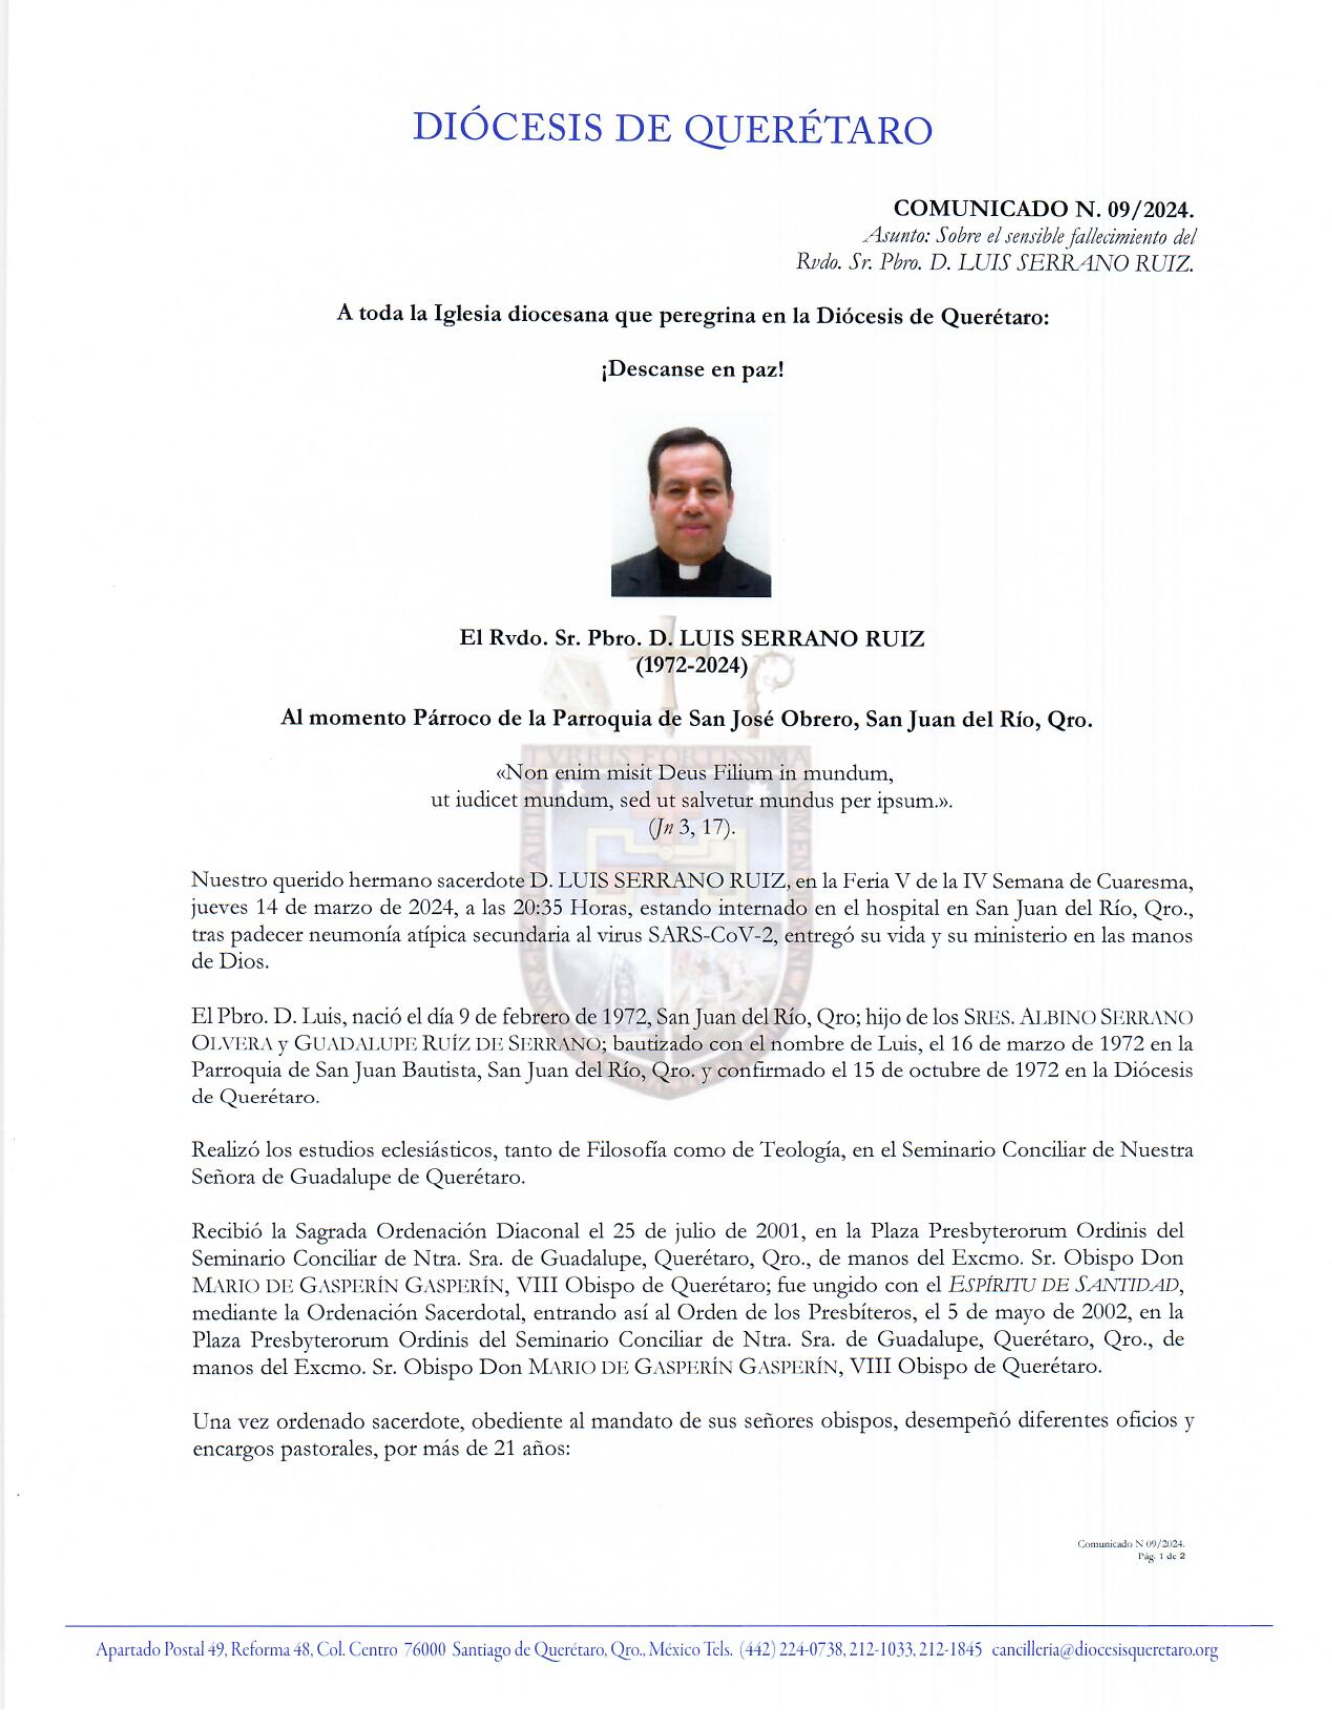 COMUNICADO N. 09/2024. Asunto: Sobre el sensible fallecimiento del Rvdo. Sr. Pbro. D. LUIS SERRANO RUIZ.